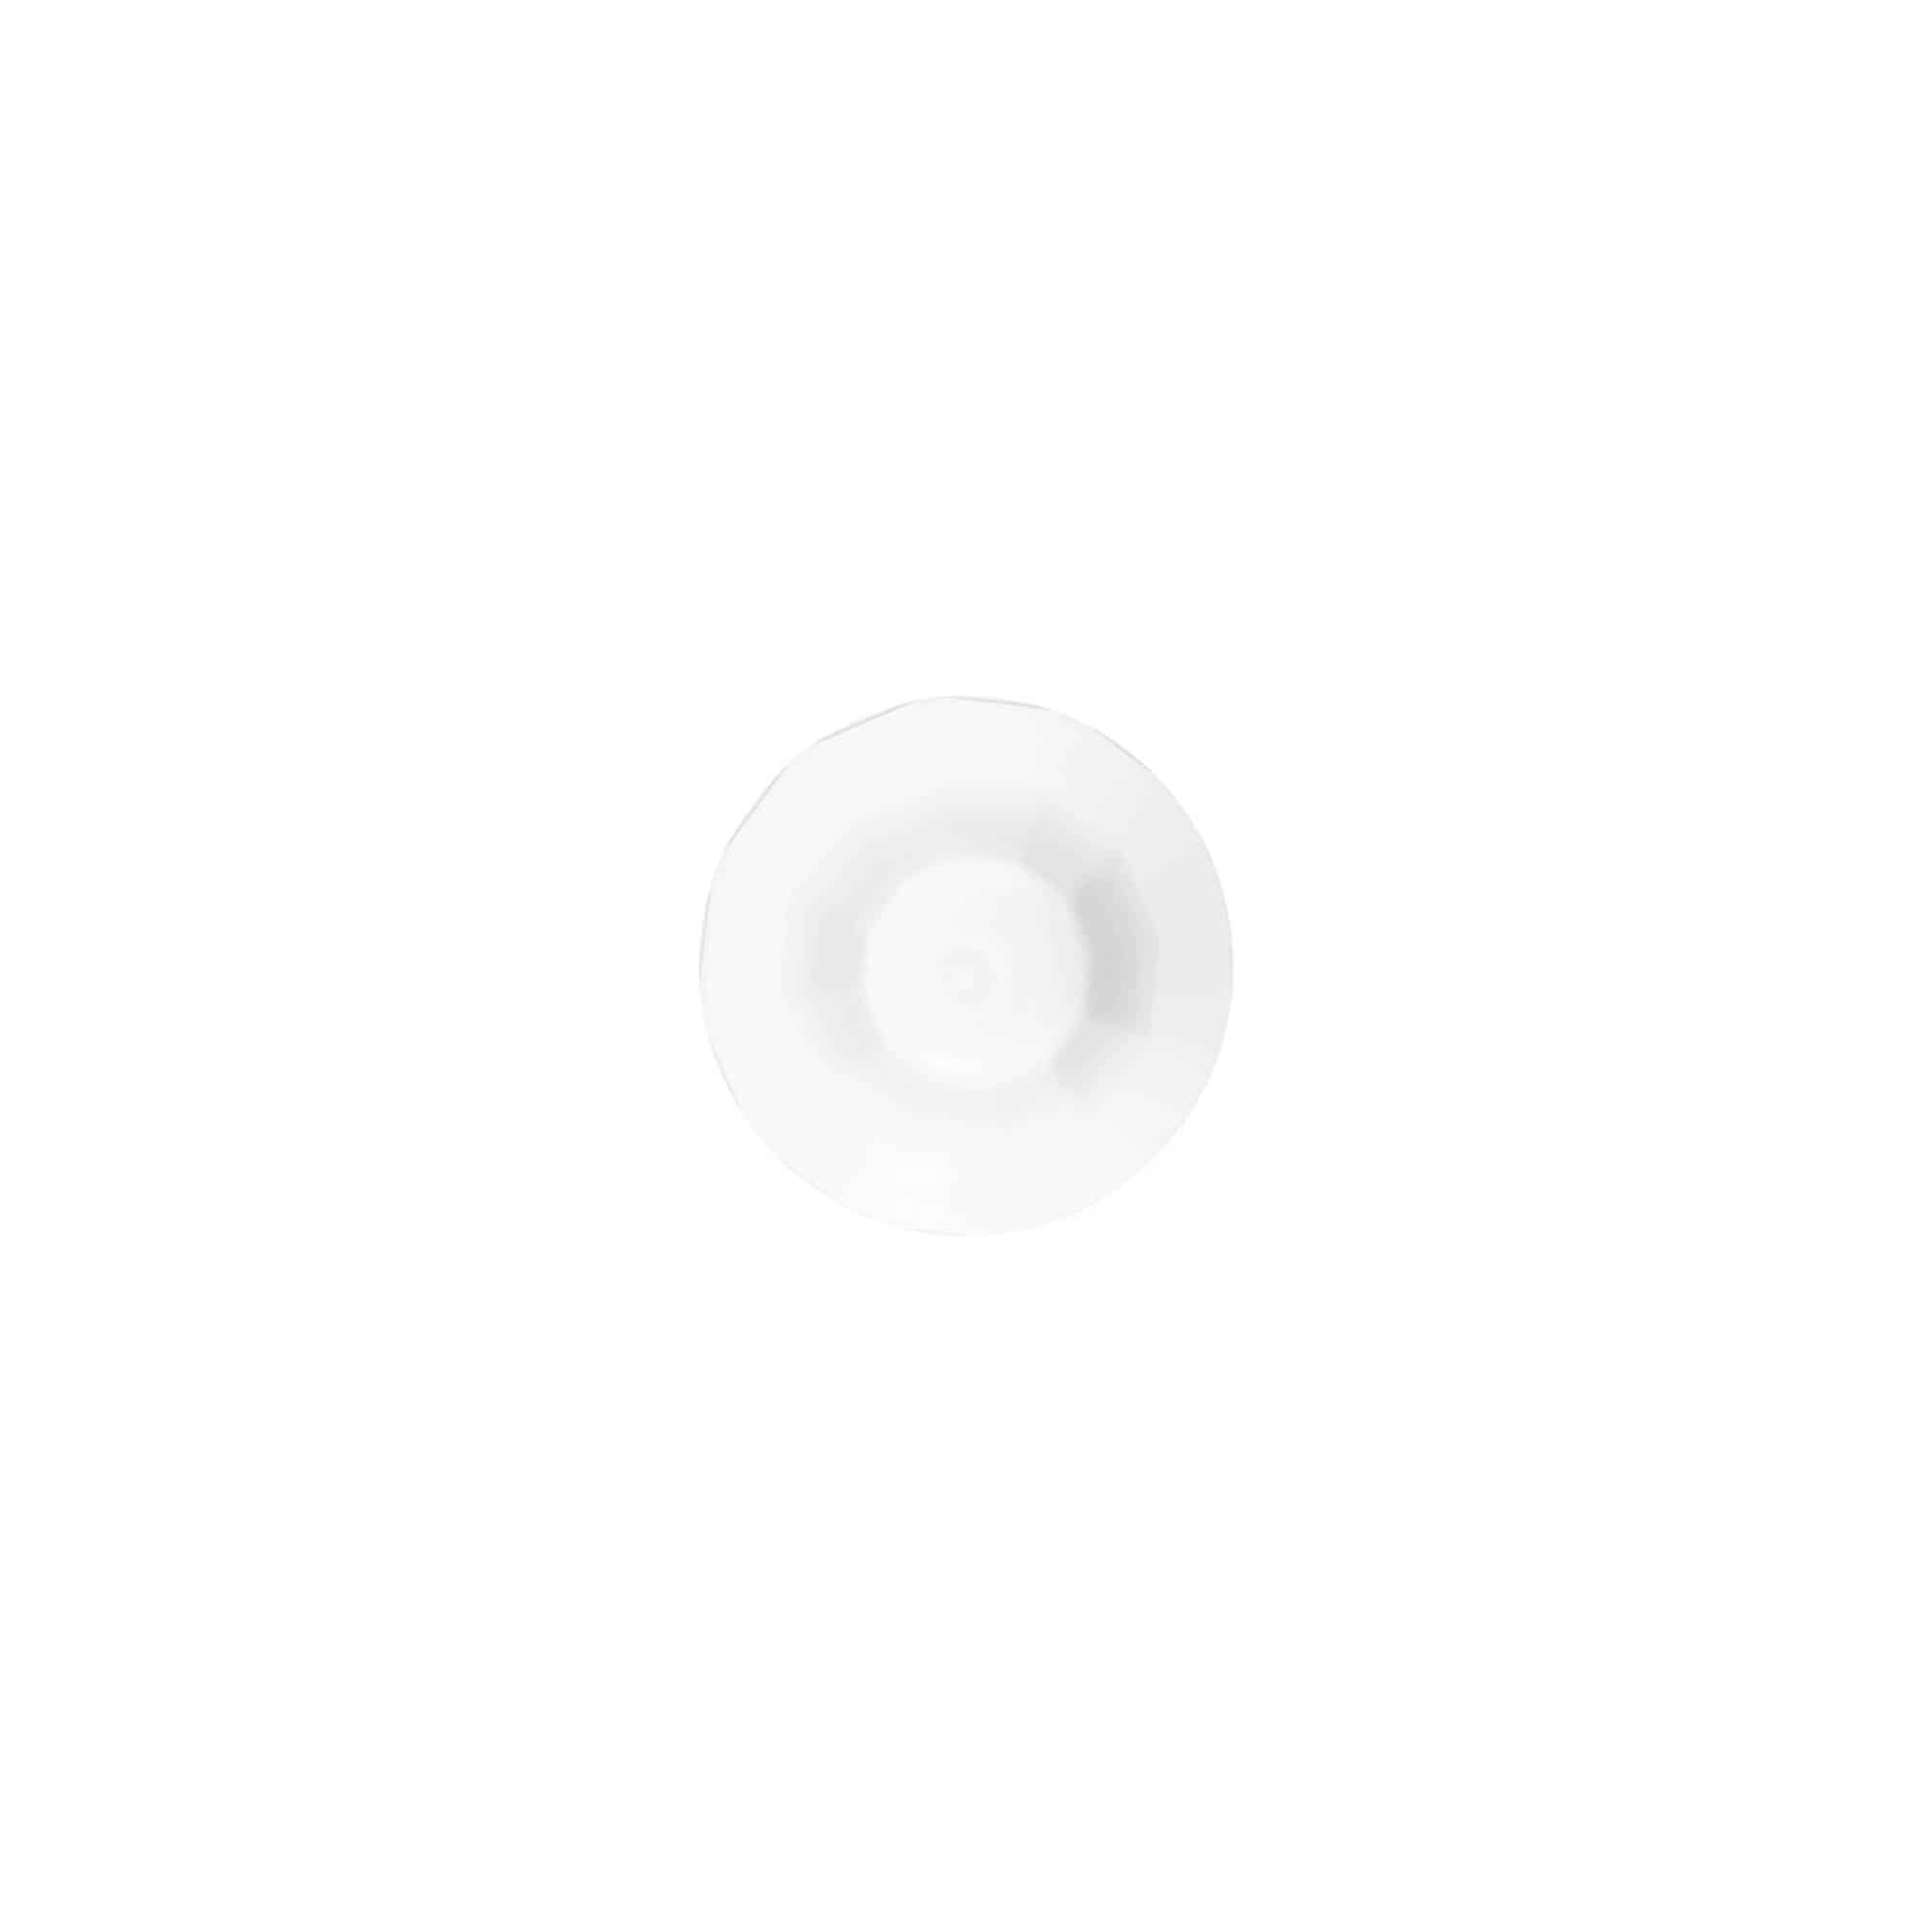 Zakrętka z aplikatorem, tworzywo sztuczne PE, kolor biały, do zamknięcia: DIN 18